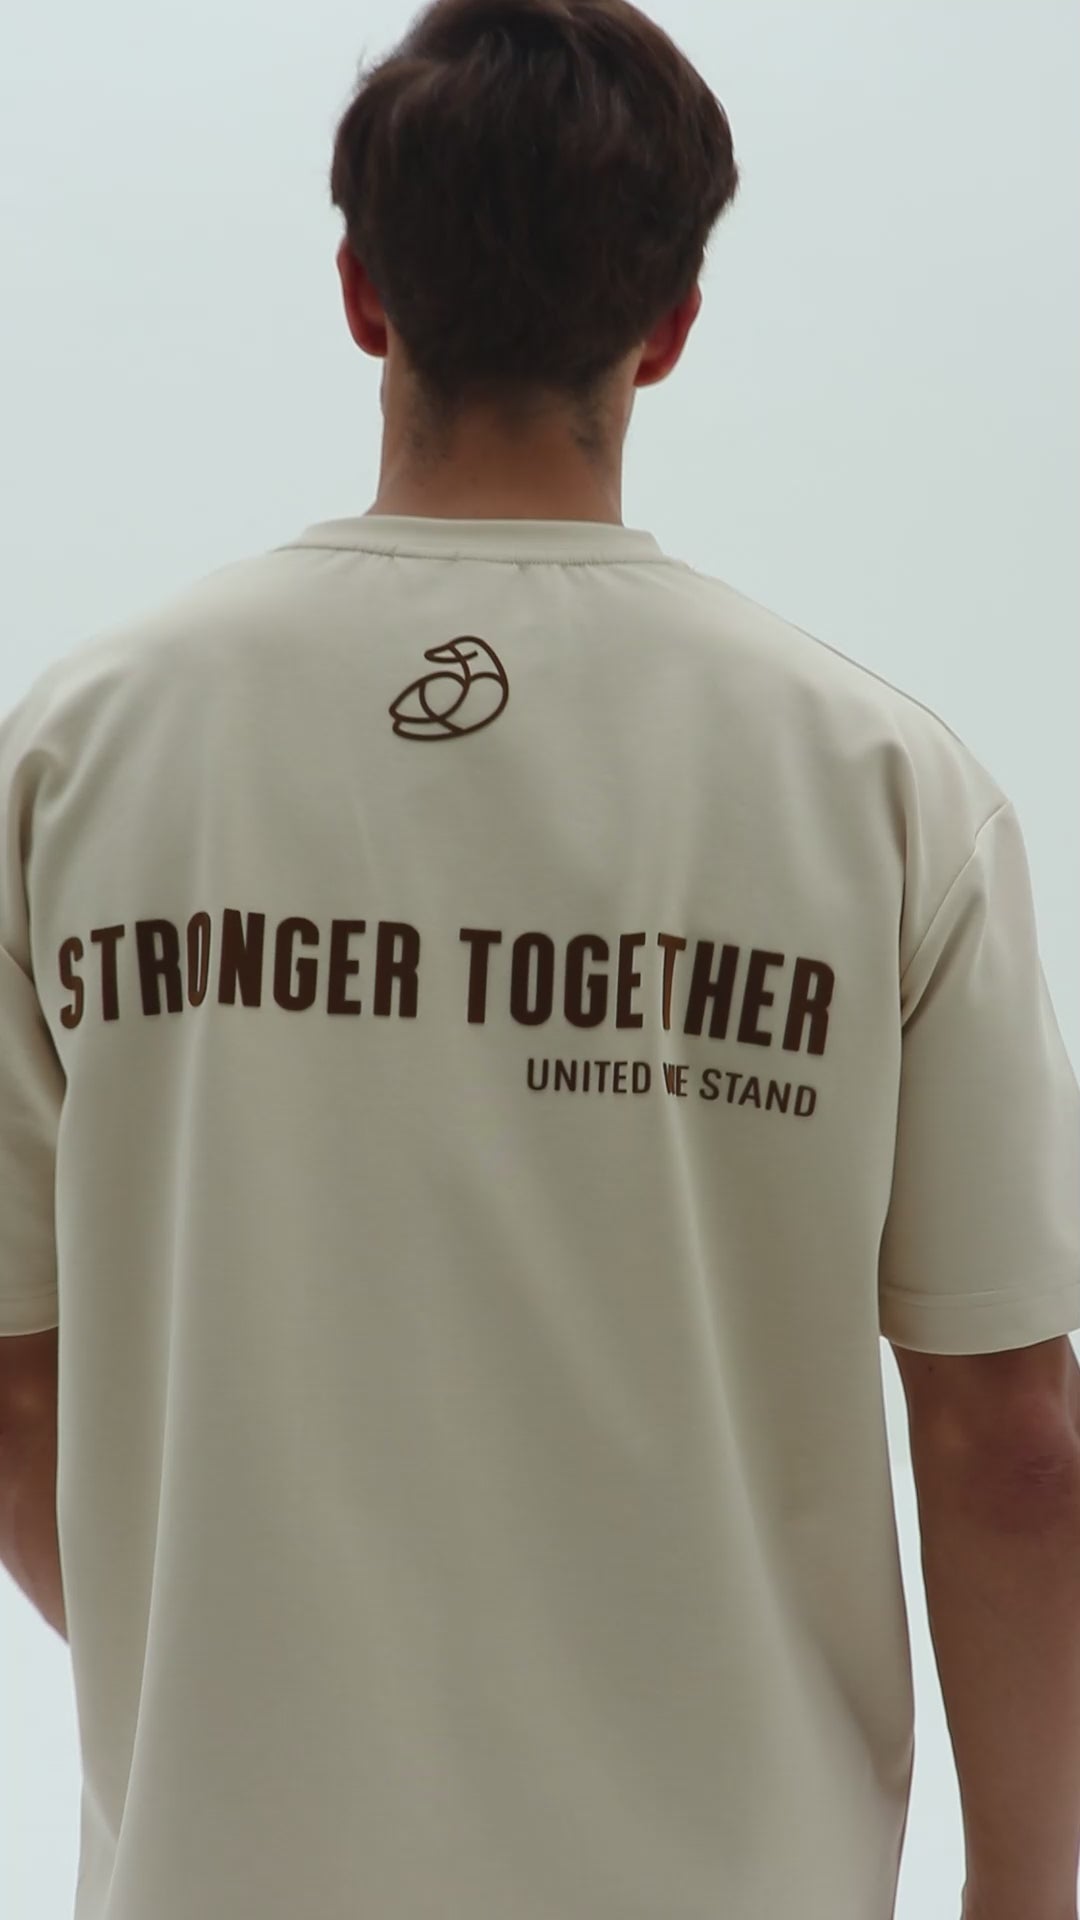 ADOS- Soft Tshirt - Stronger Together